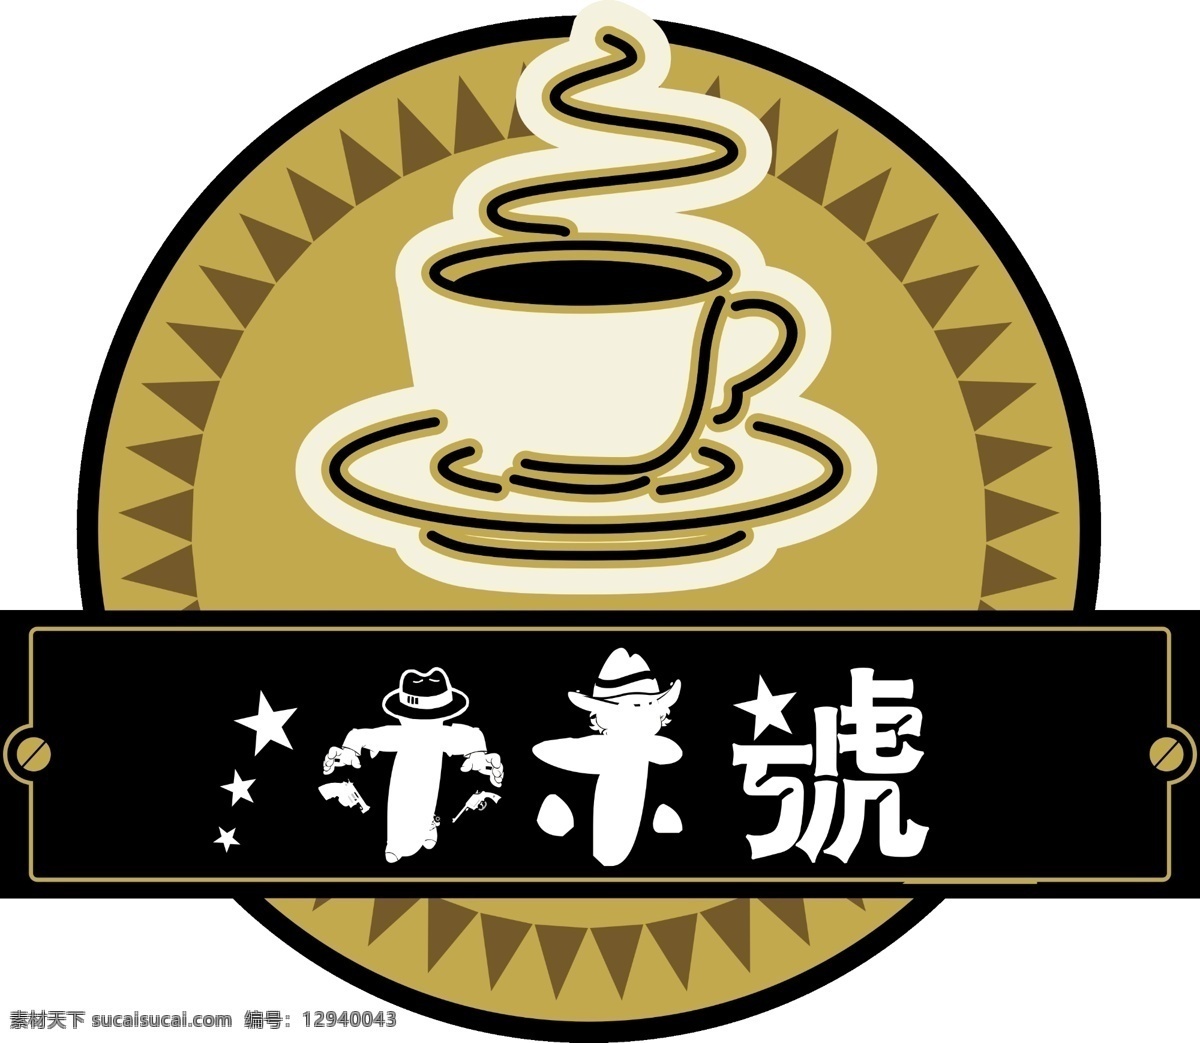 木木号图片 咖啡厅 logo 标志 咖啡素材 咖啡 咖啡logo 抢手 海盗 海盗logo 个性logo 牛仔 牛仔logo 分层